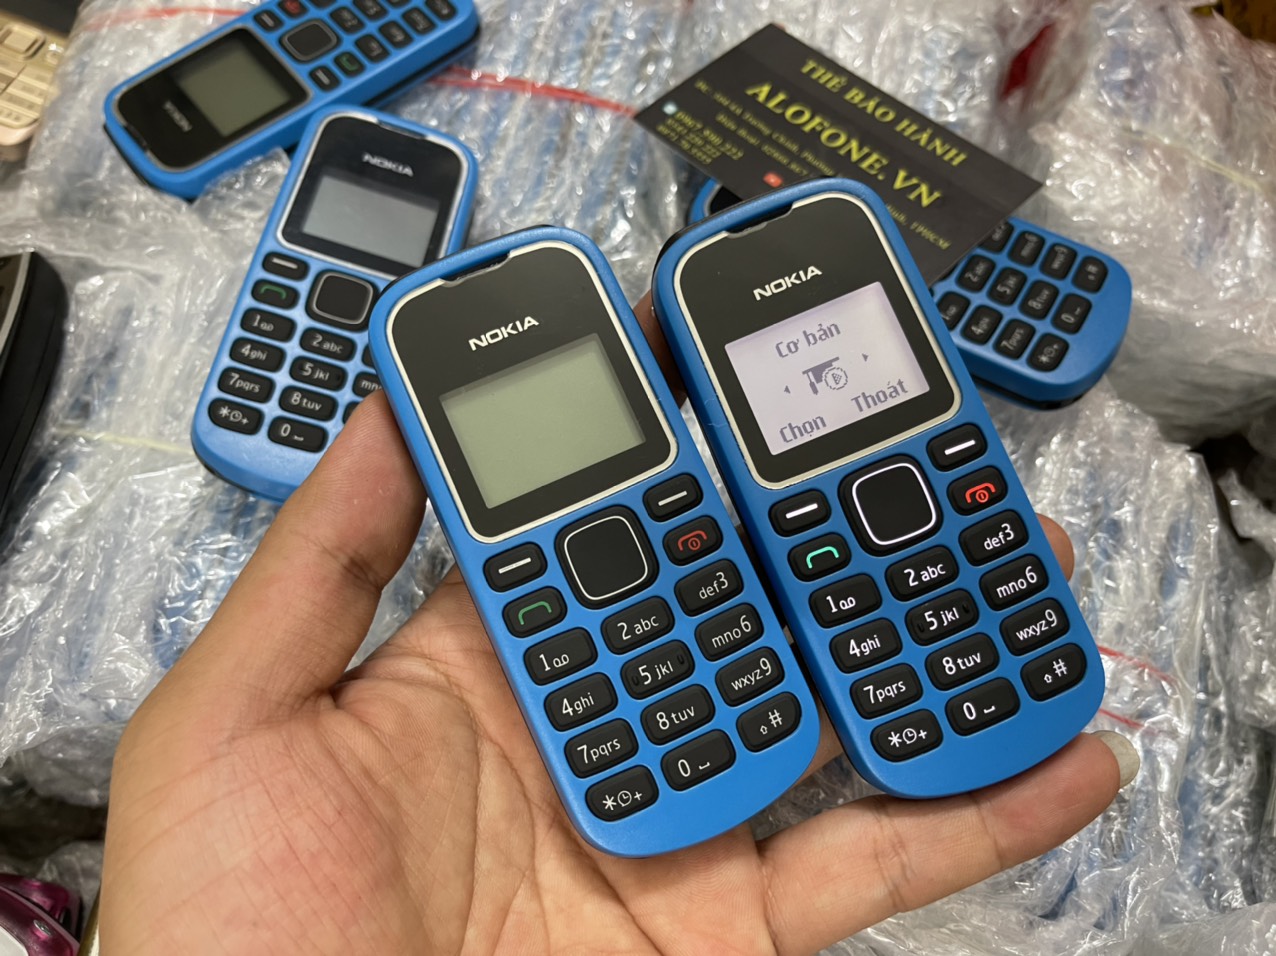 Hình nền Nokia 1280 cho iPhone cực kỳ hoài niệm và độc đáo cho bạn